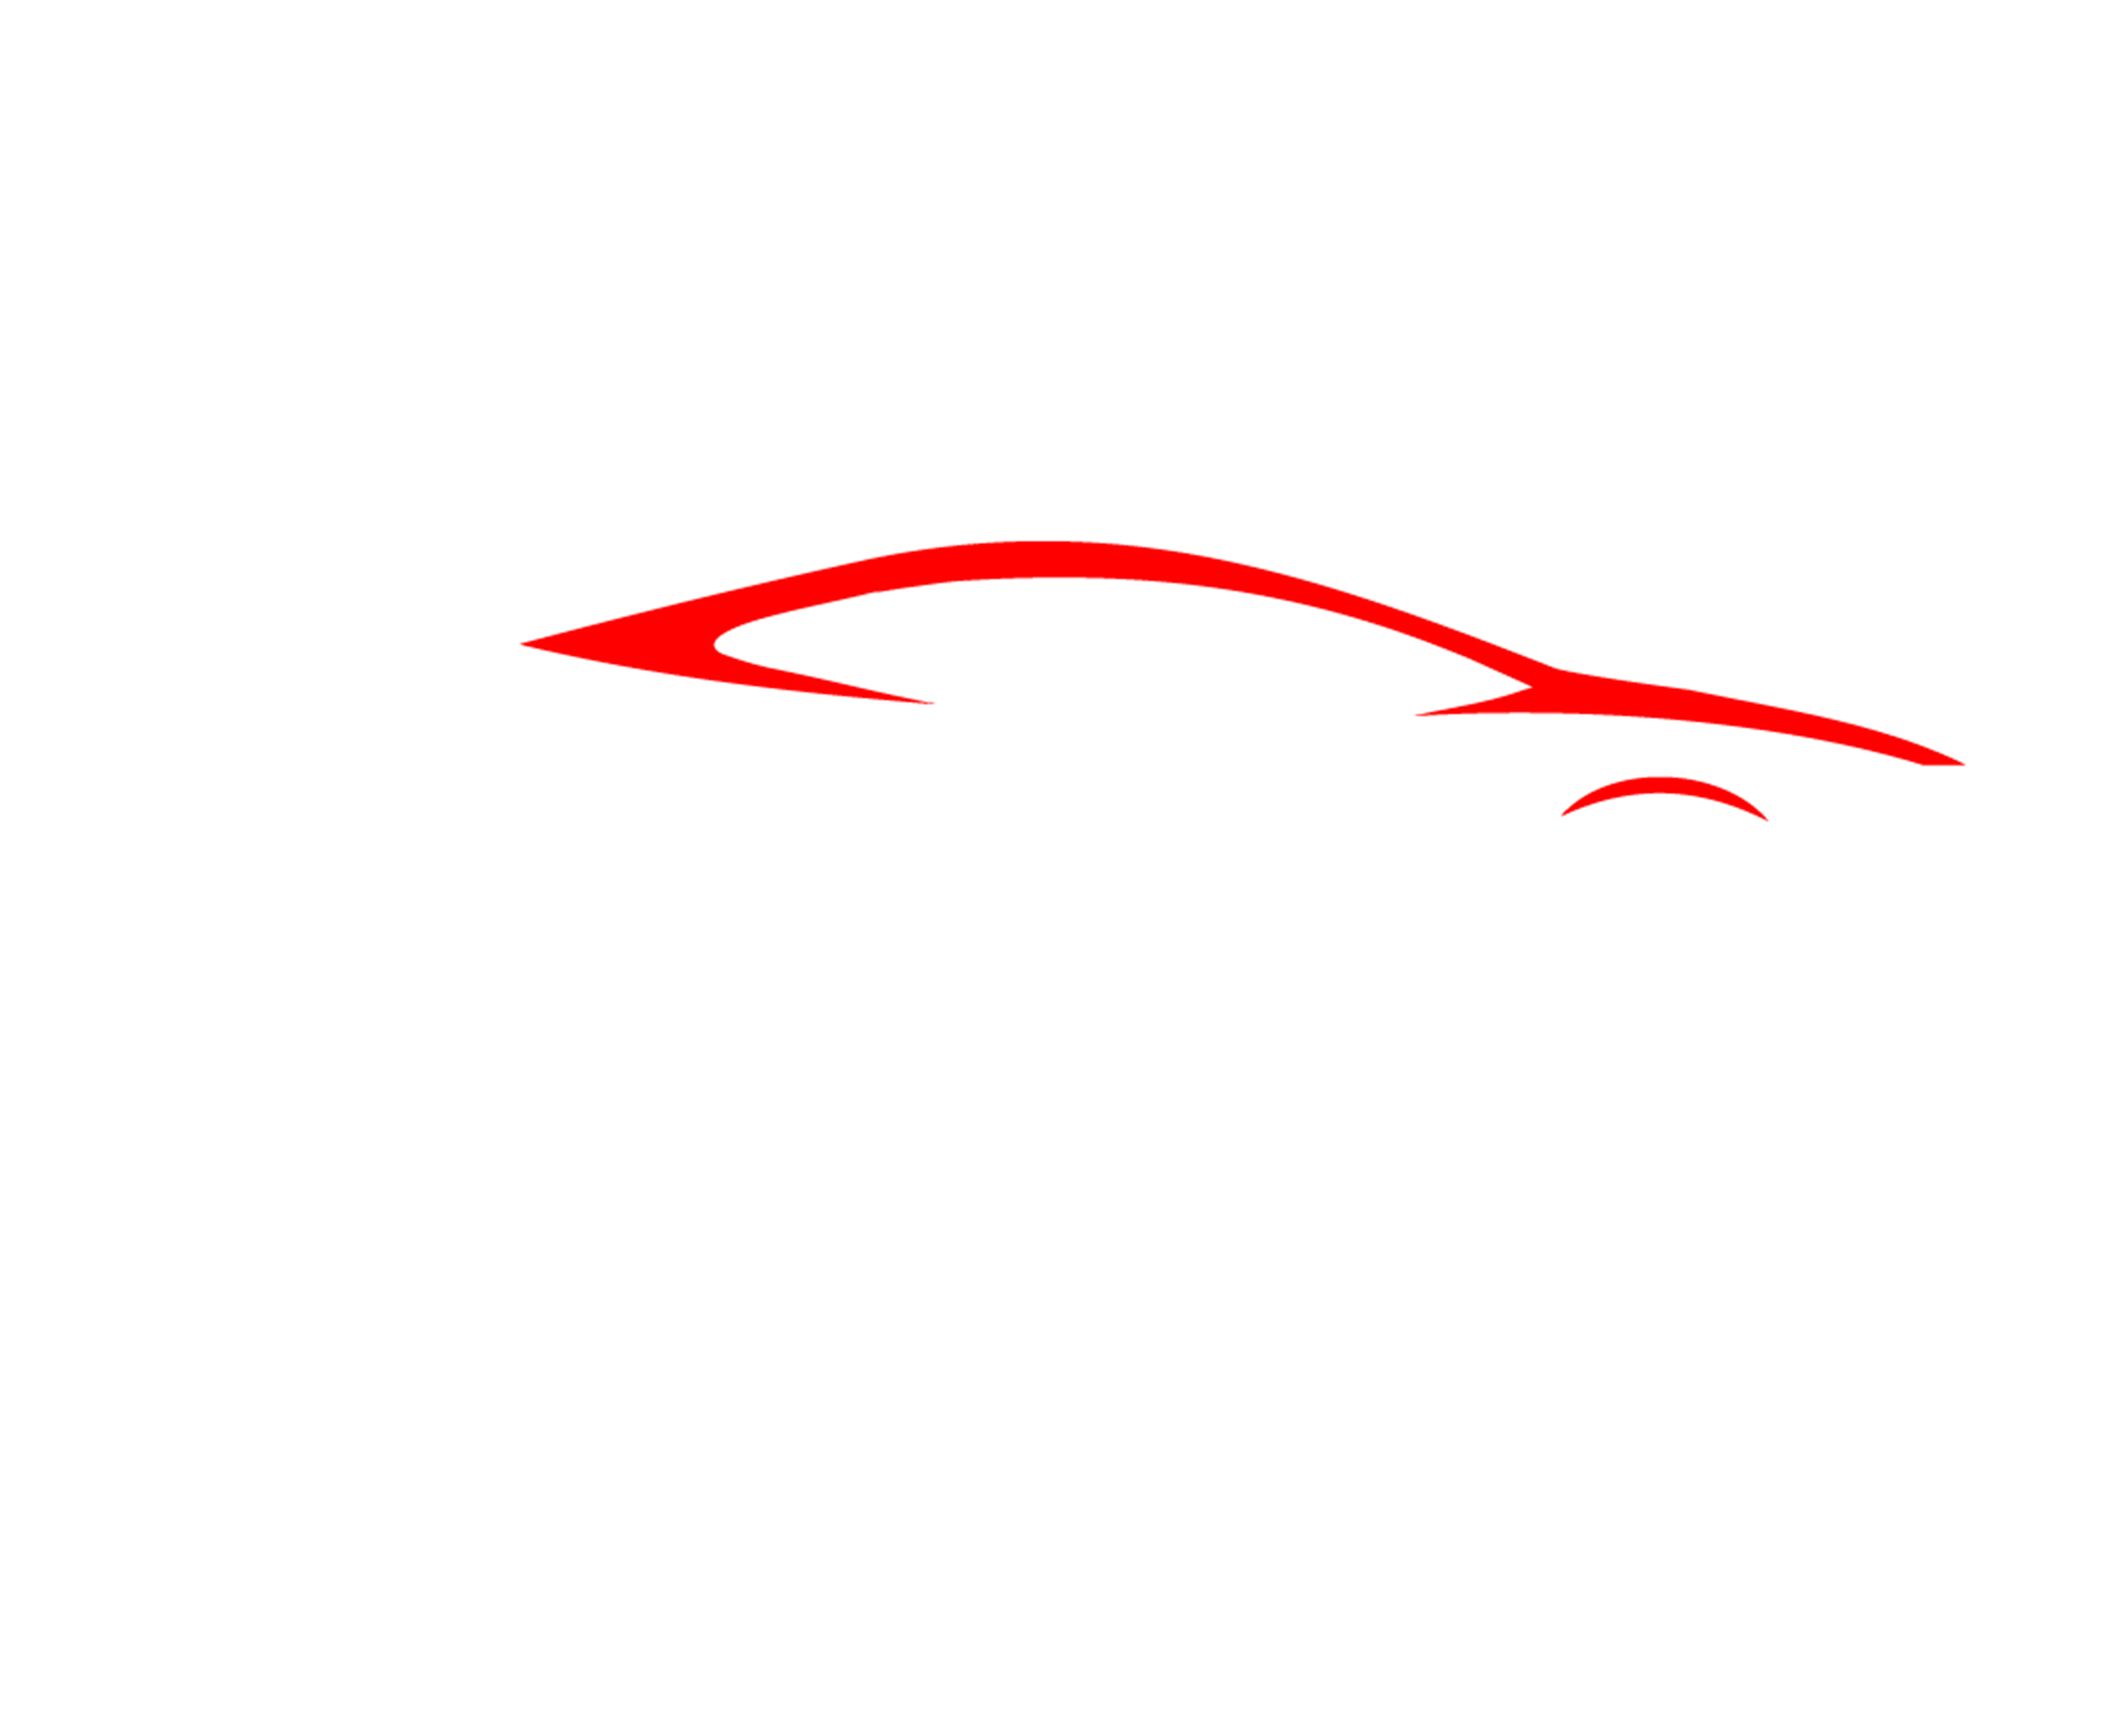 Autocarclub.com.vn | Cửa hàng nội thất ô tô đồ chơi xe hơi uy tín